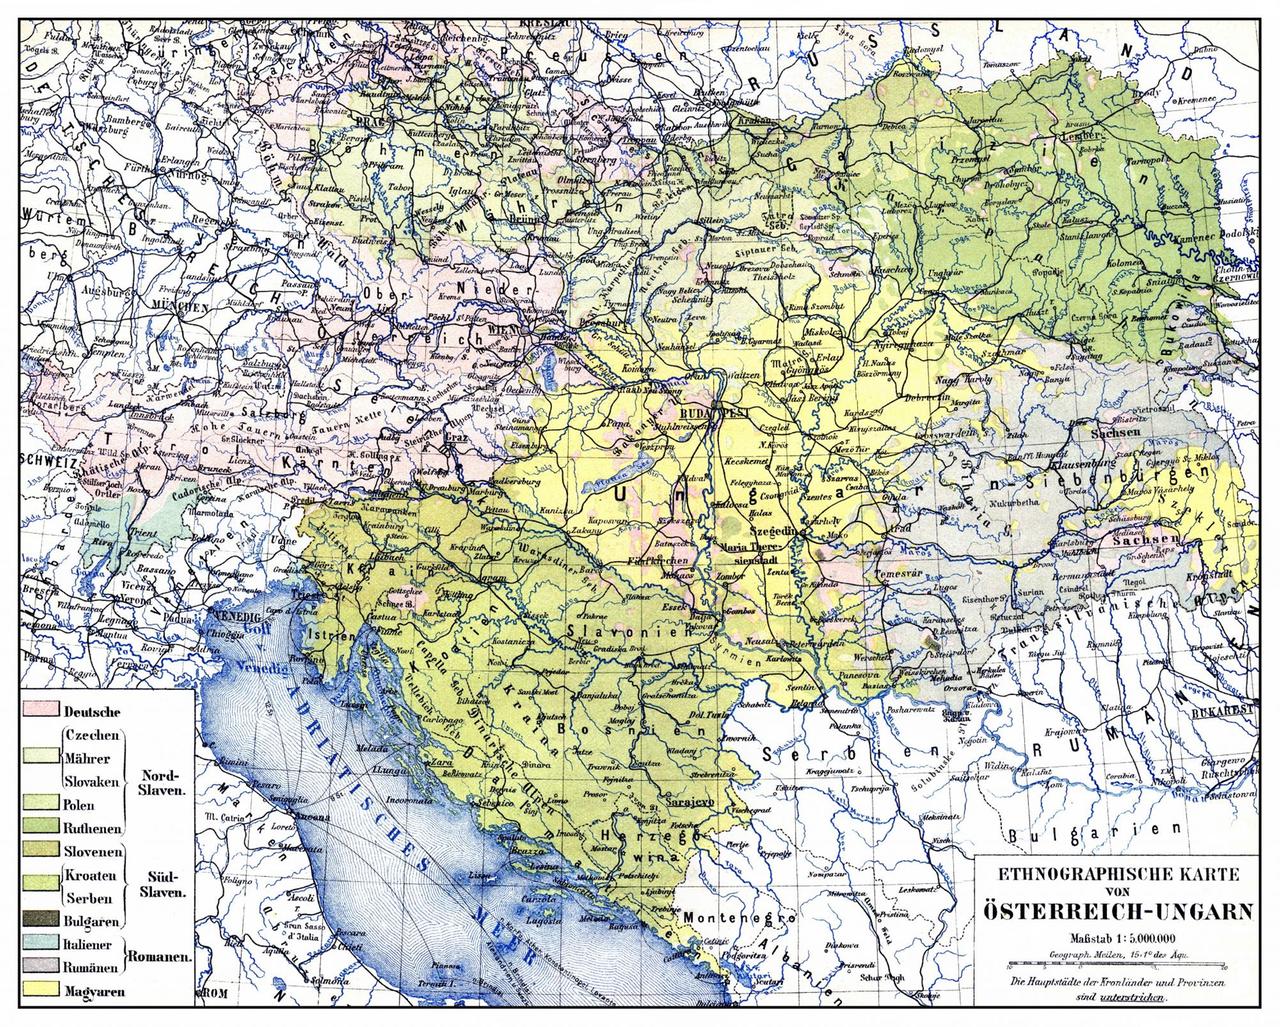 Eine Karte kennzeichnet mit verschiedenen Farben die unterschiedlich geprägten Regionen der Donaumonarchie.